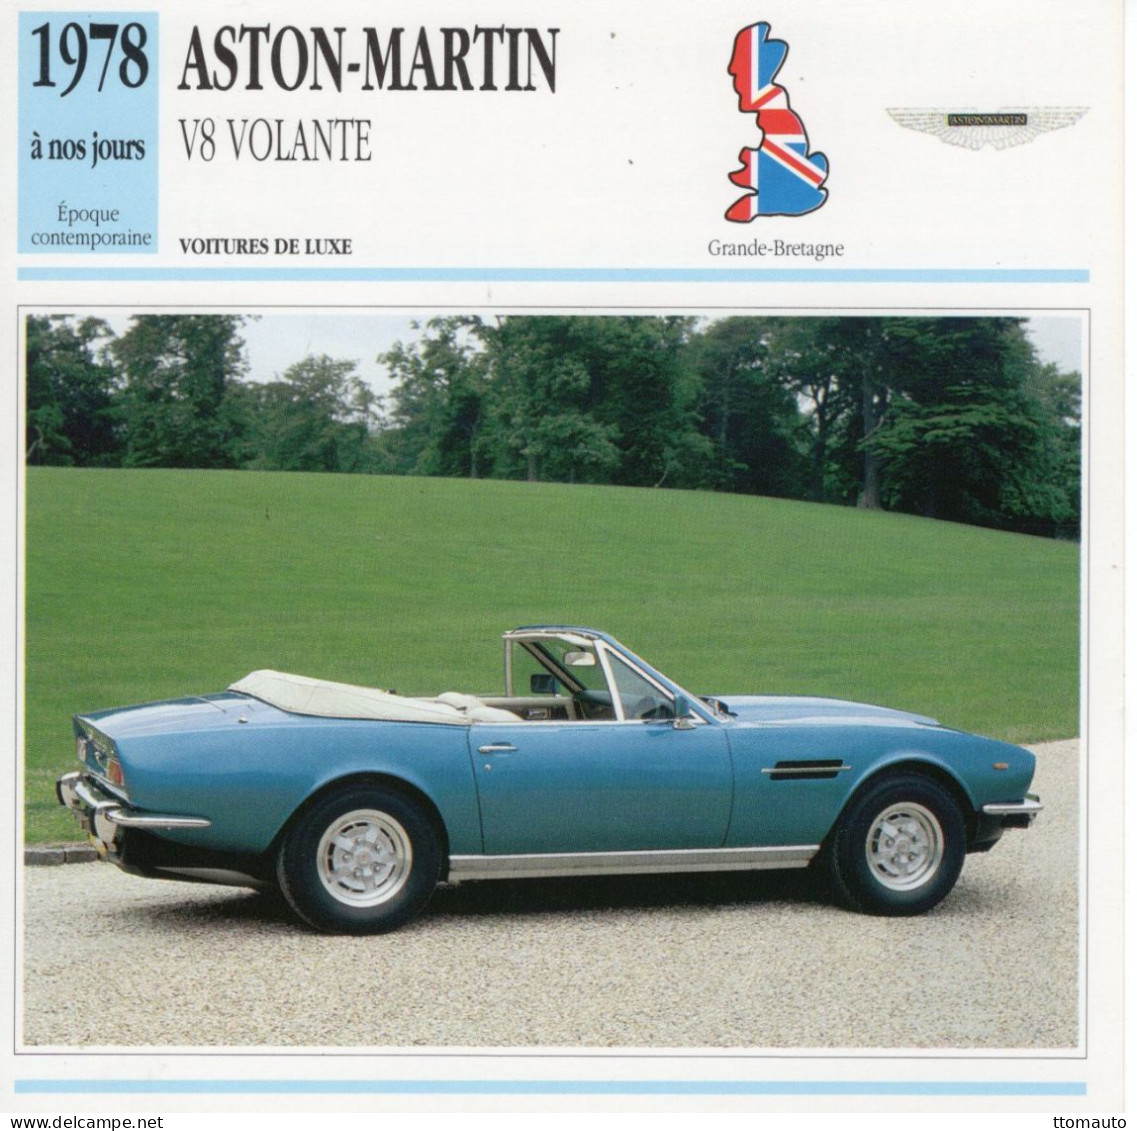 Aston-Martin Volante V8 Cabriolet  -  1978  - Voiture De Luxe -  Fiche Technique Automobile (GB) - Cars